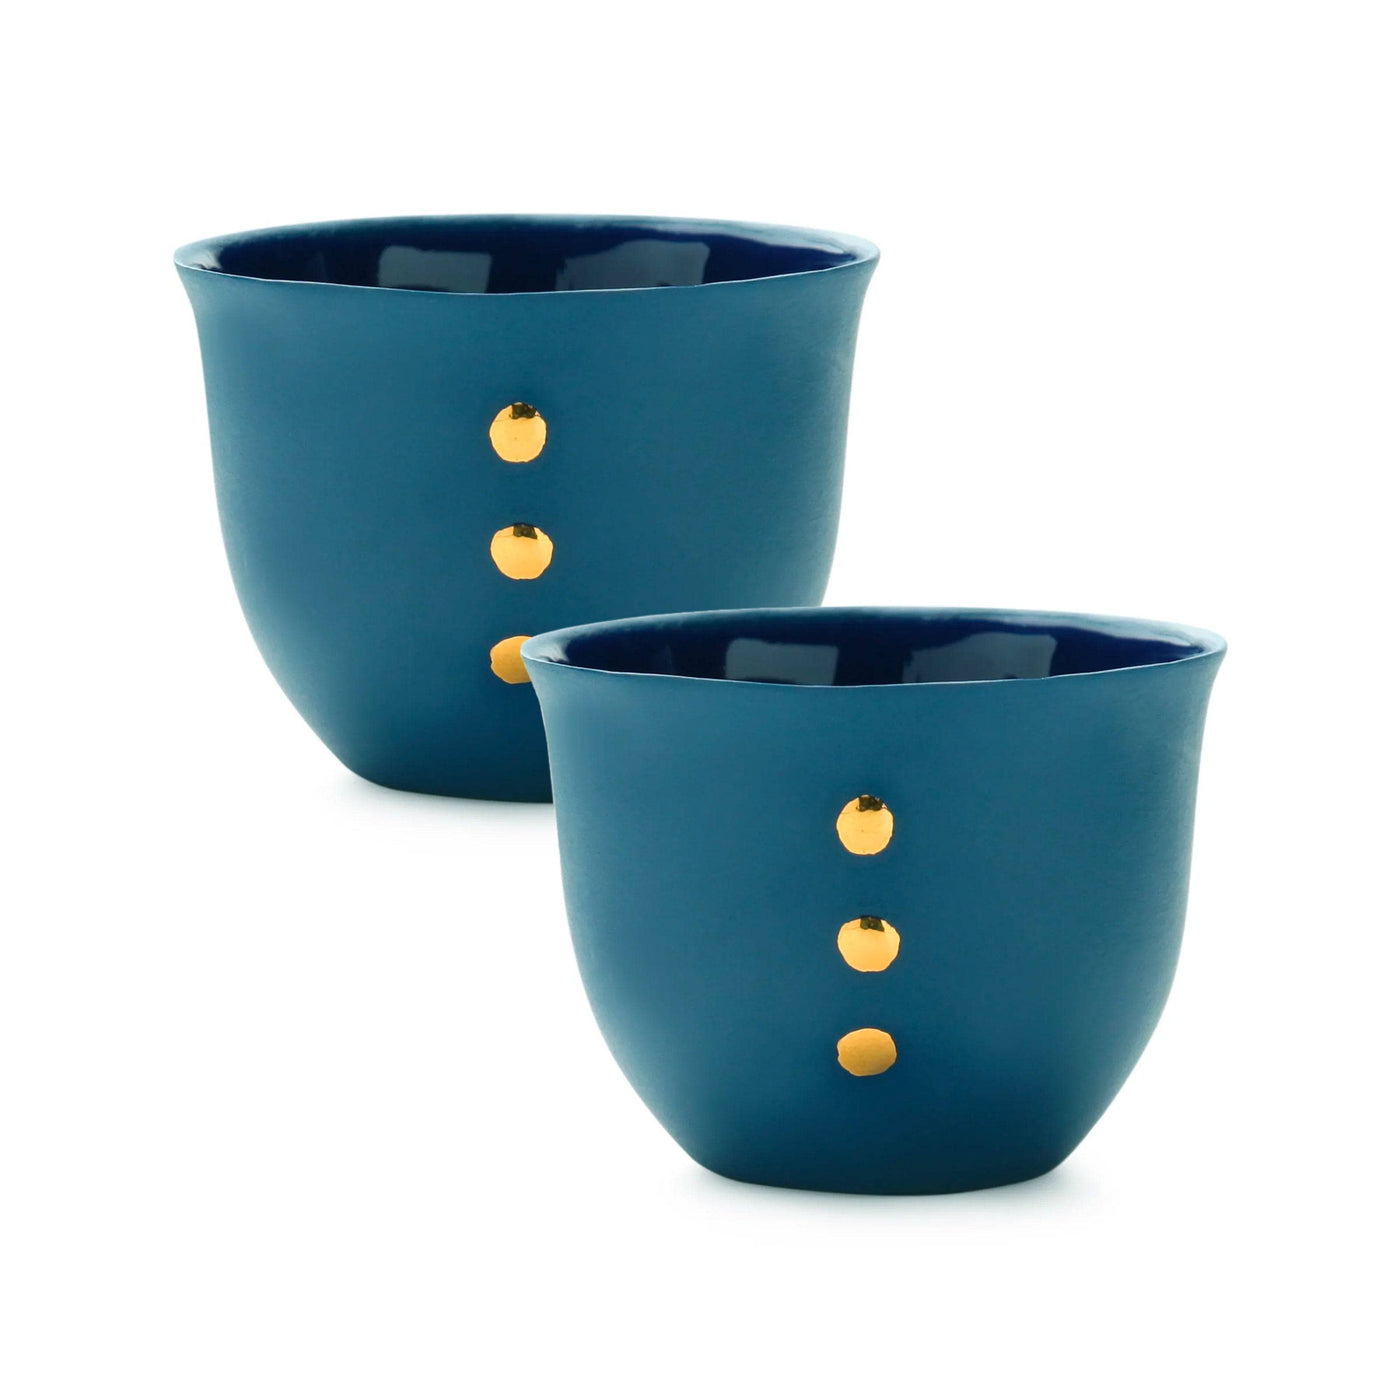 Handmade Nocturnal Set of 2 Espresso Cups, Green Cups & Mugs sazy.com